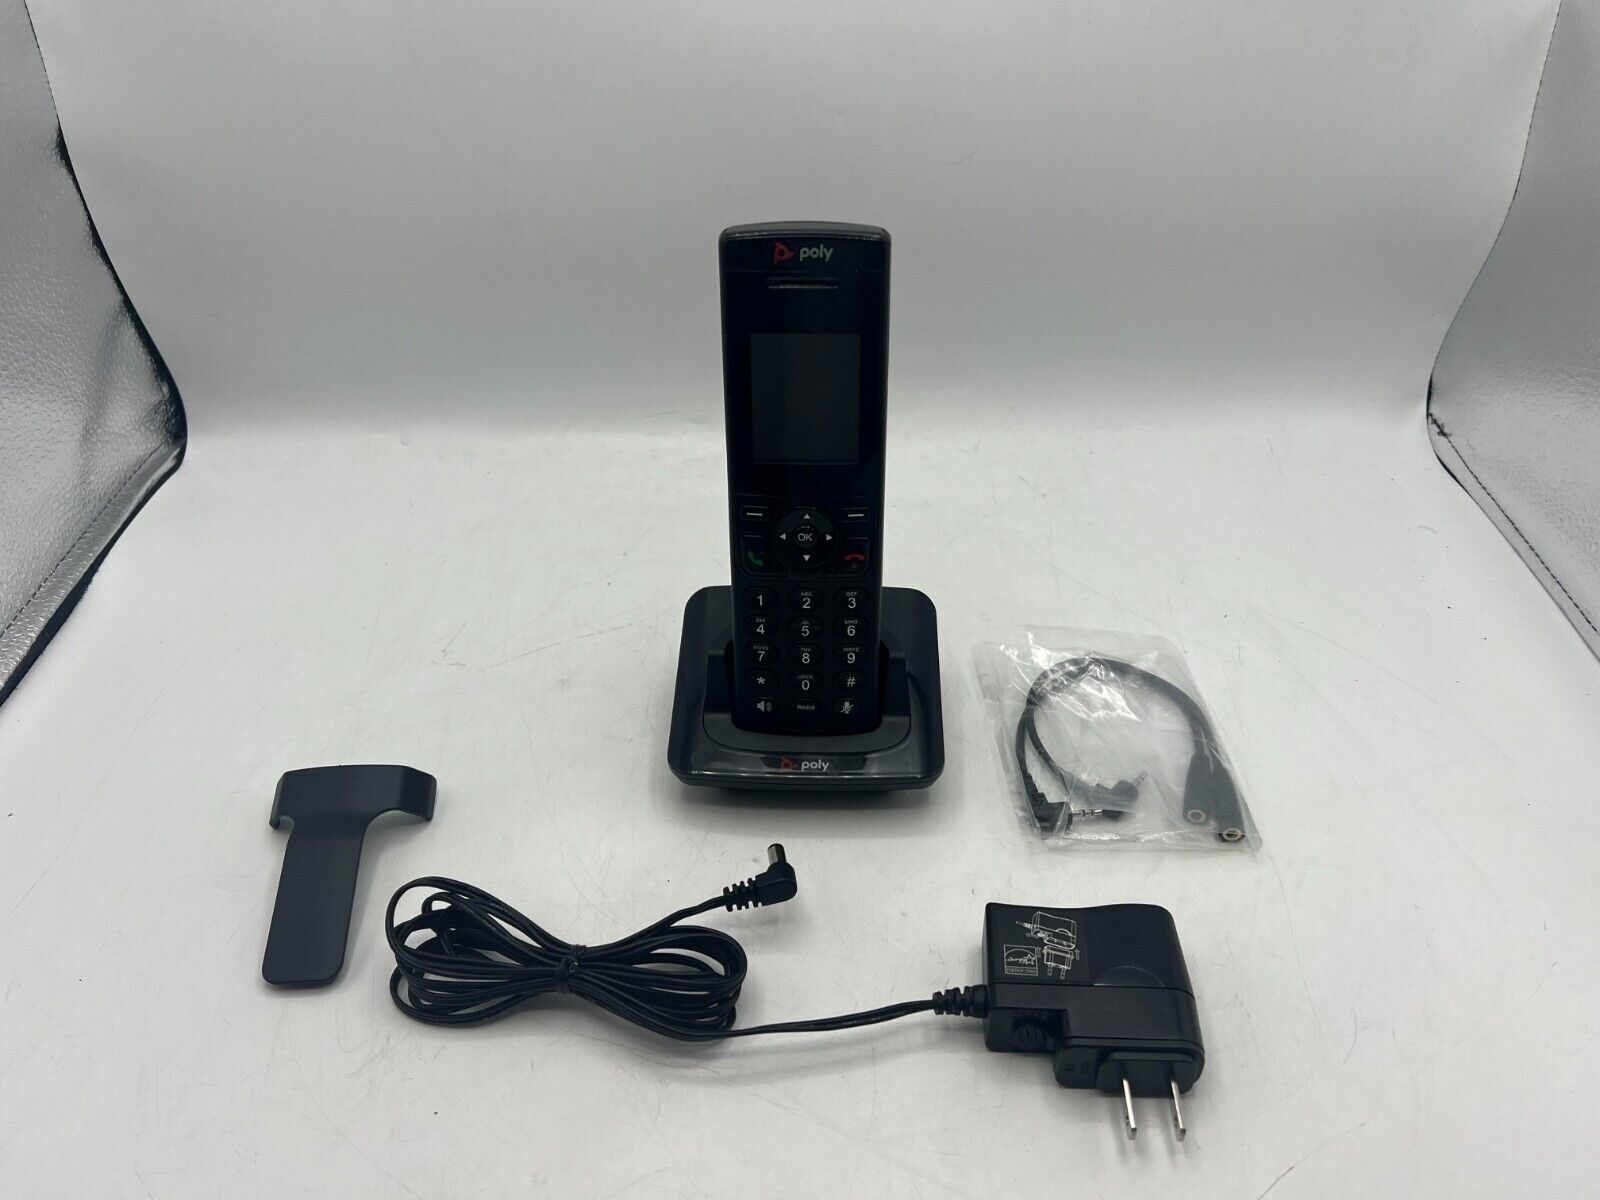 Original Poly VVX D230 2200-49235-001 Wireless Handset & Charger